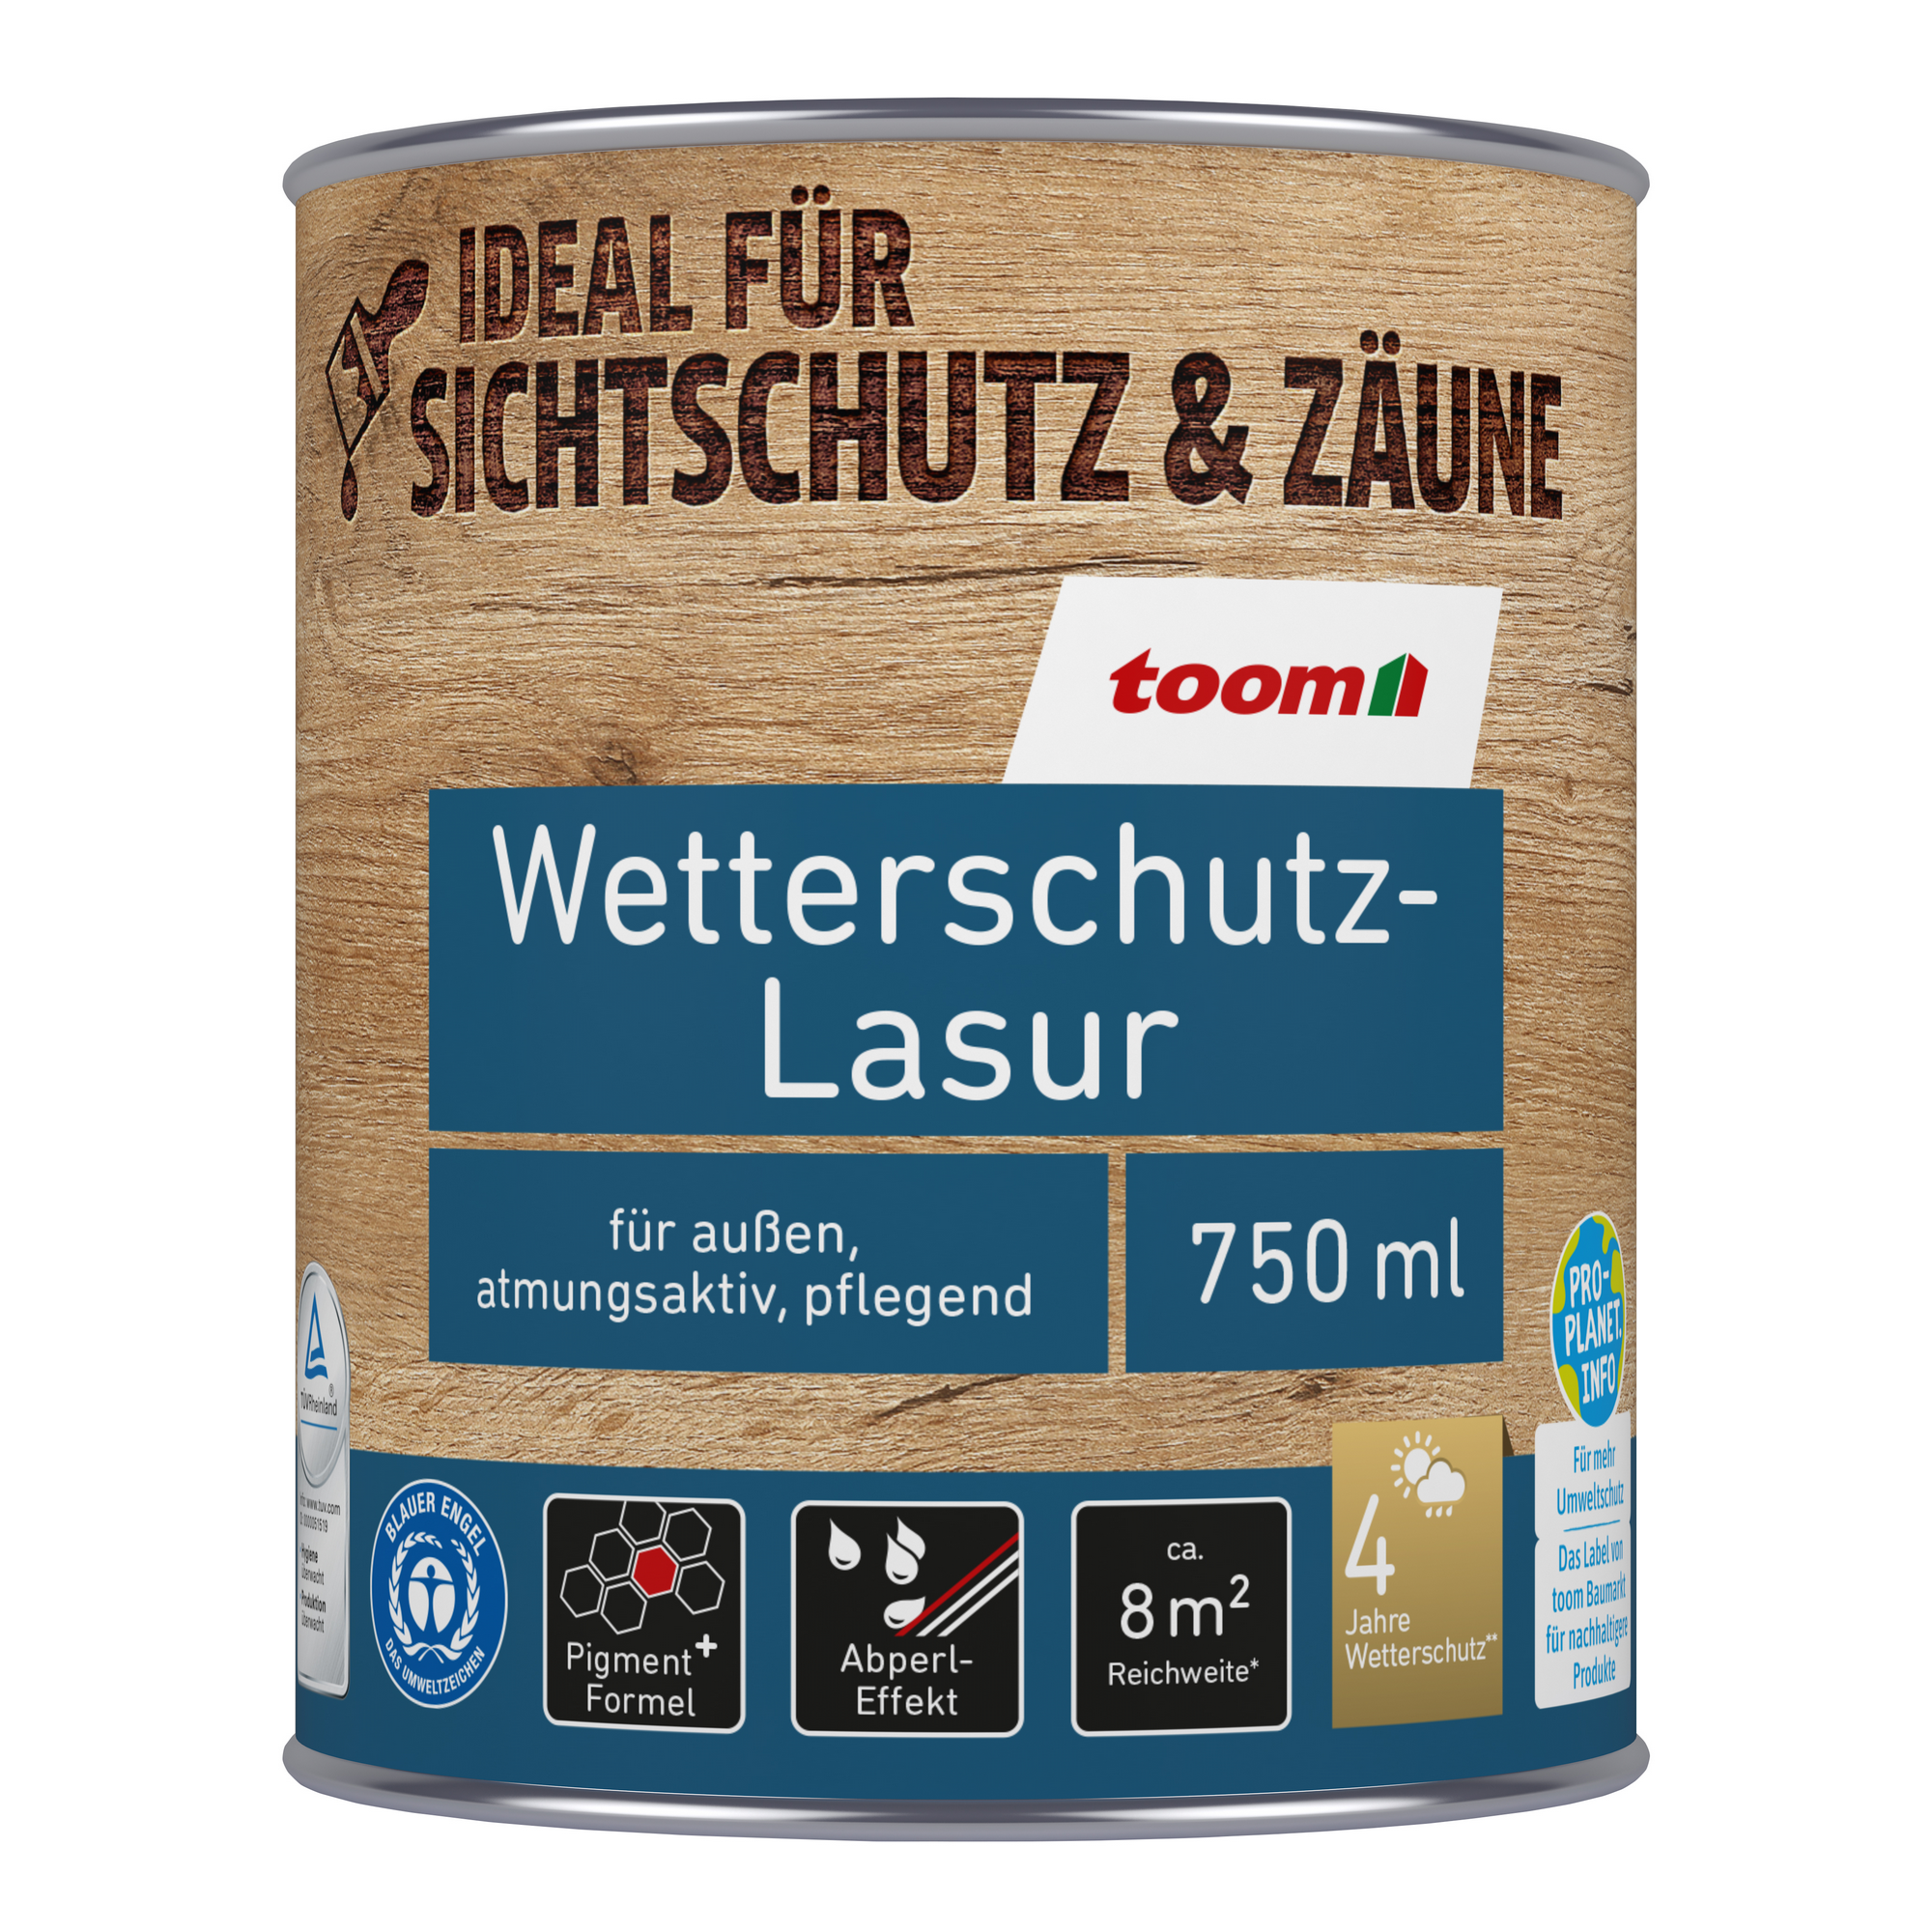 Wetterschutz-Lasur nussbaumfarben dunkel 750 ml + product picture